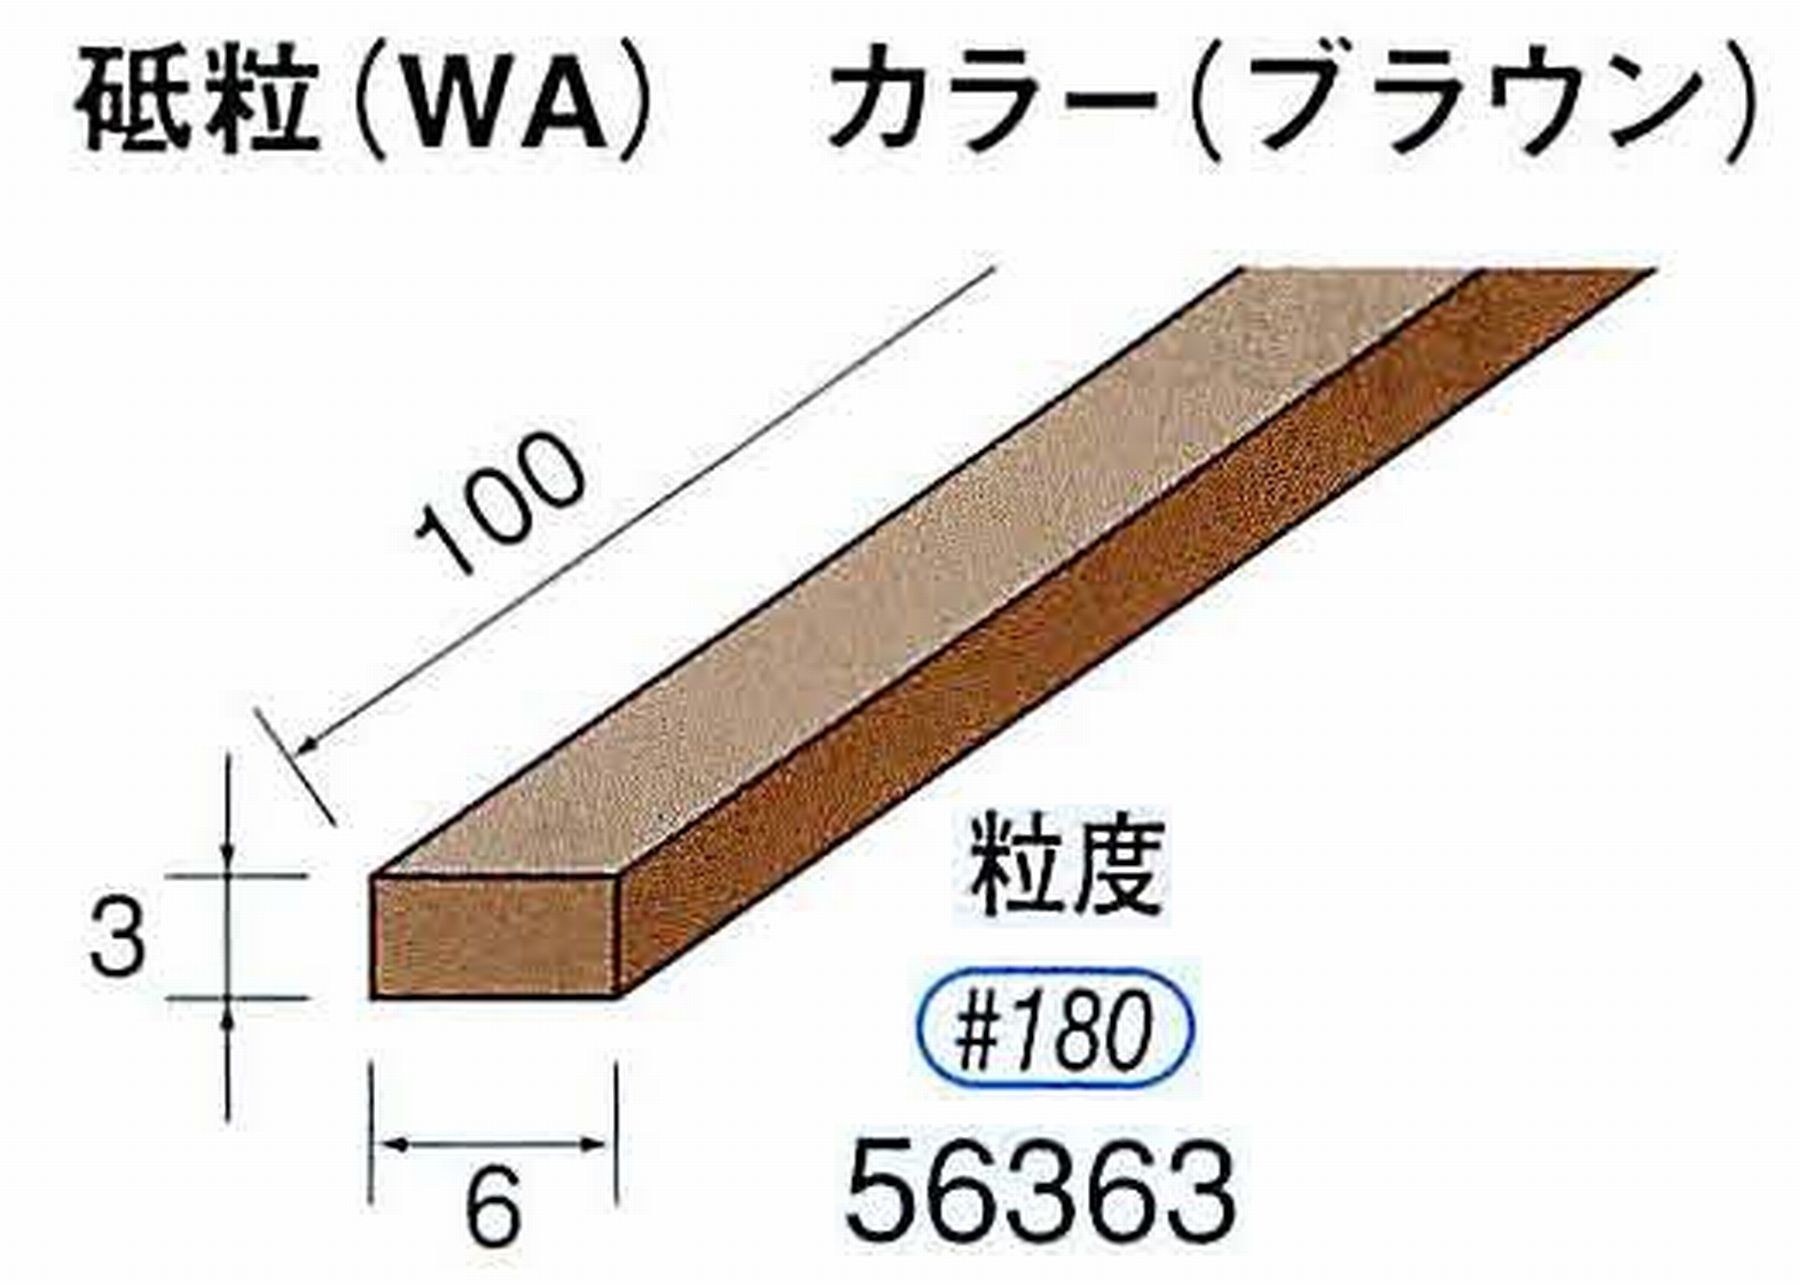 ナカニシ/NAKANISHI スティック砥石 ブラウン・フィニッシュシリーズ 砥粒(WA) 56363